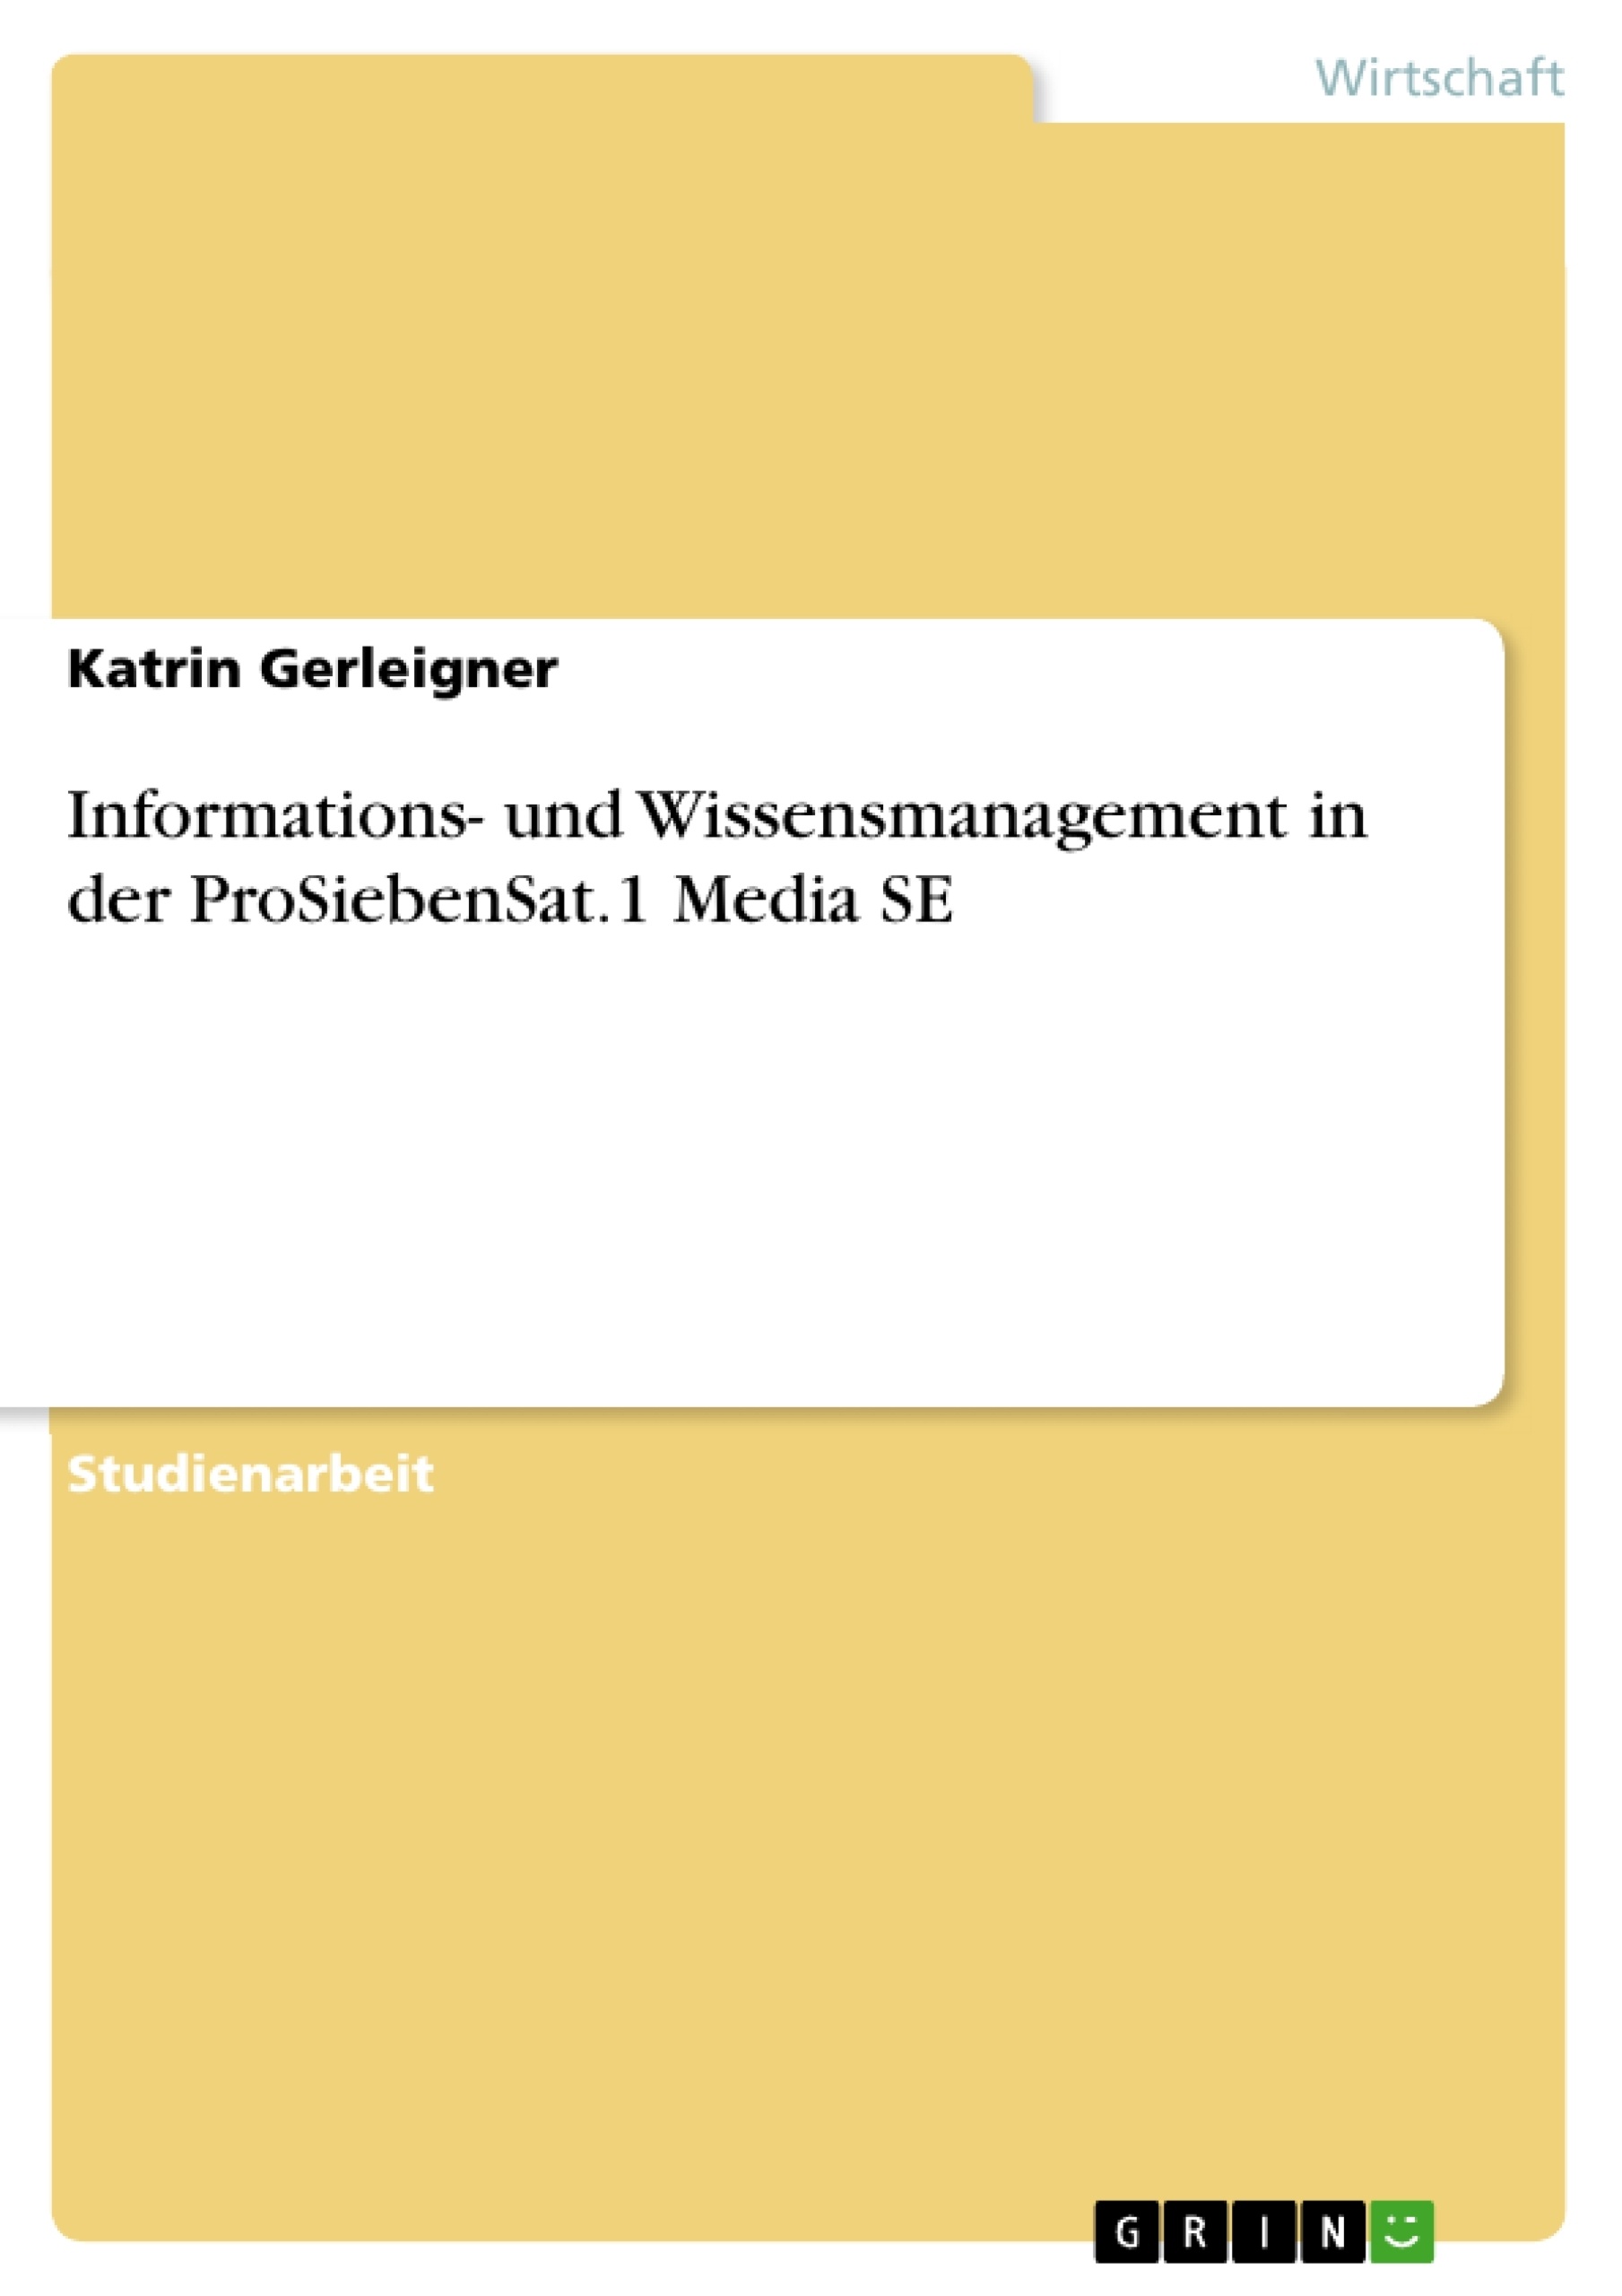 Title: Informations- und Wissensmanagement in der ProSiebenSat.1 Media SE